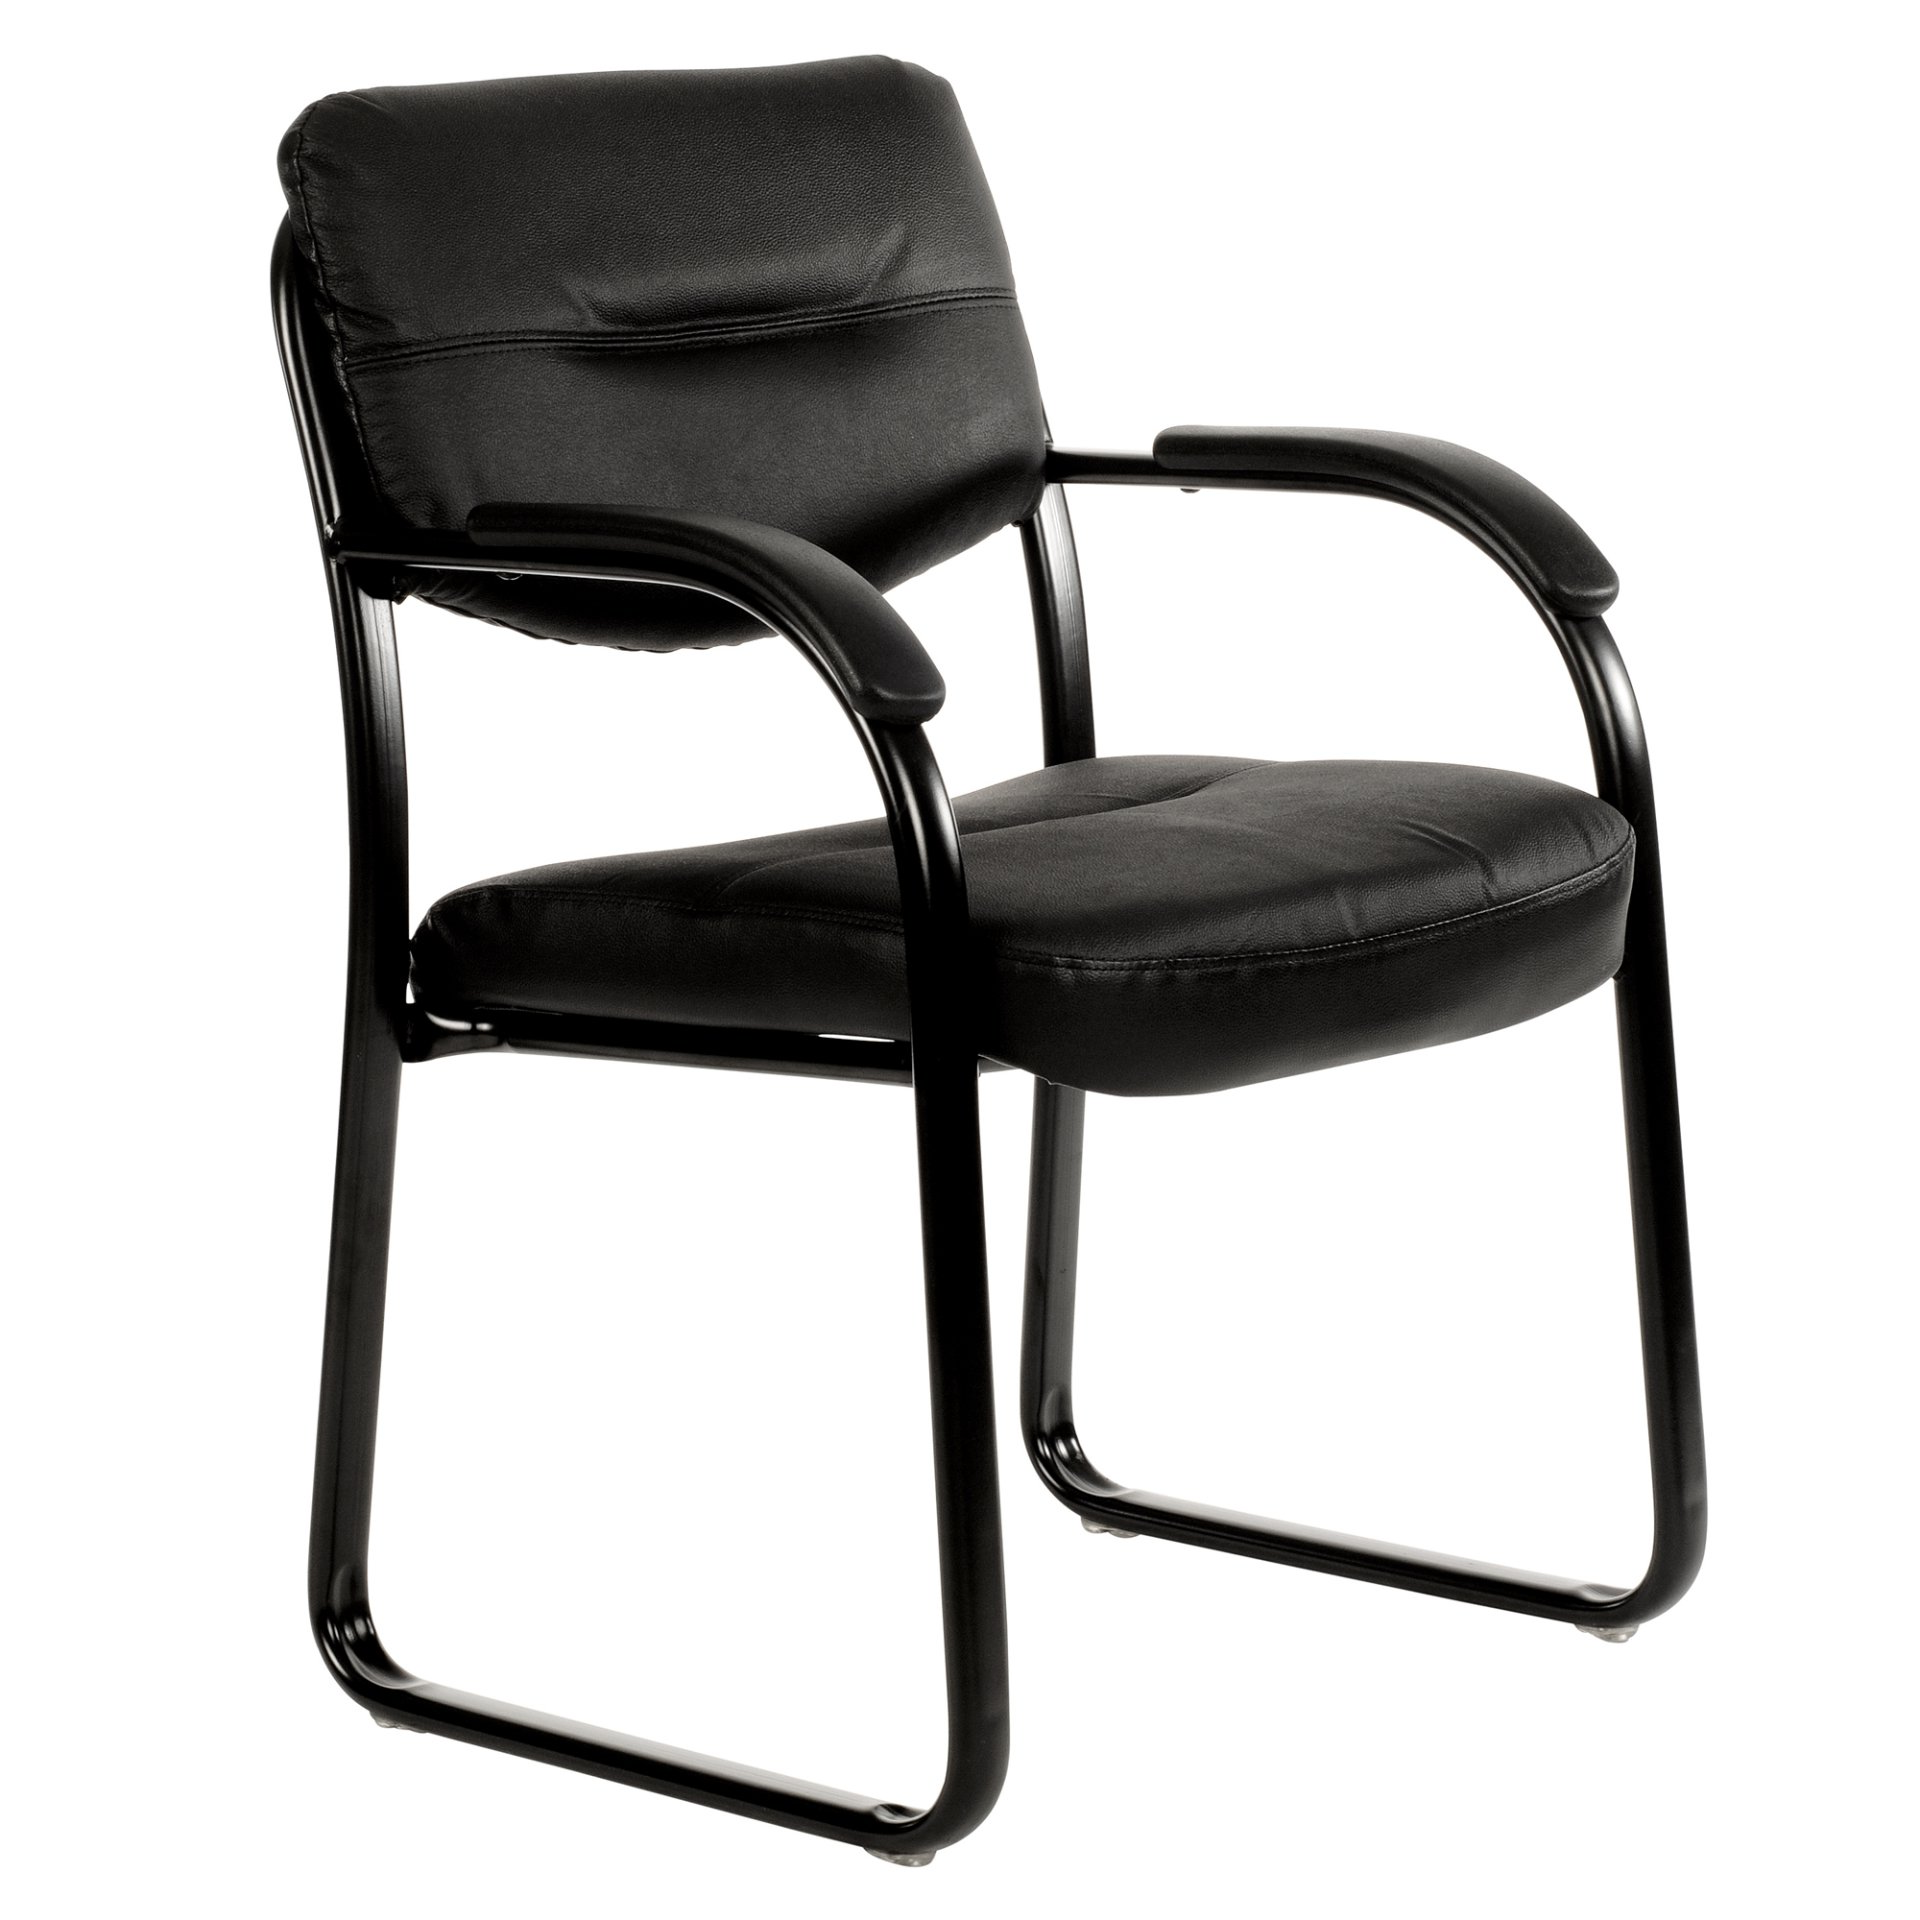 client chair